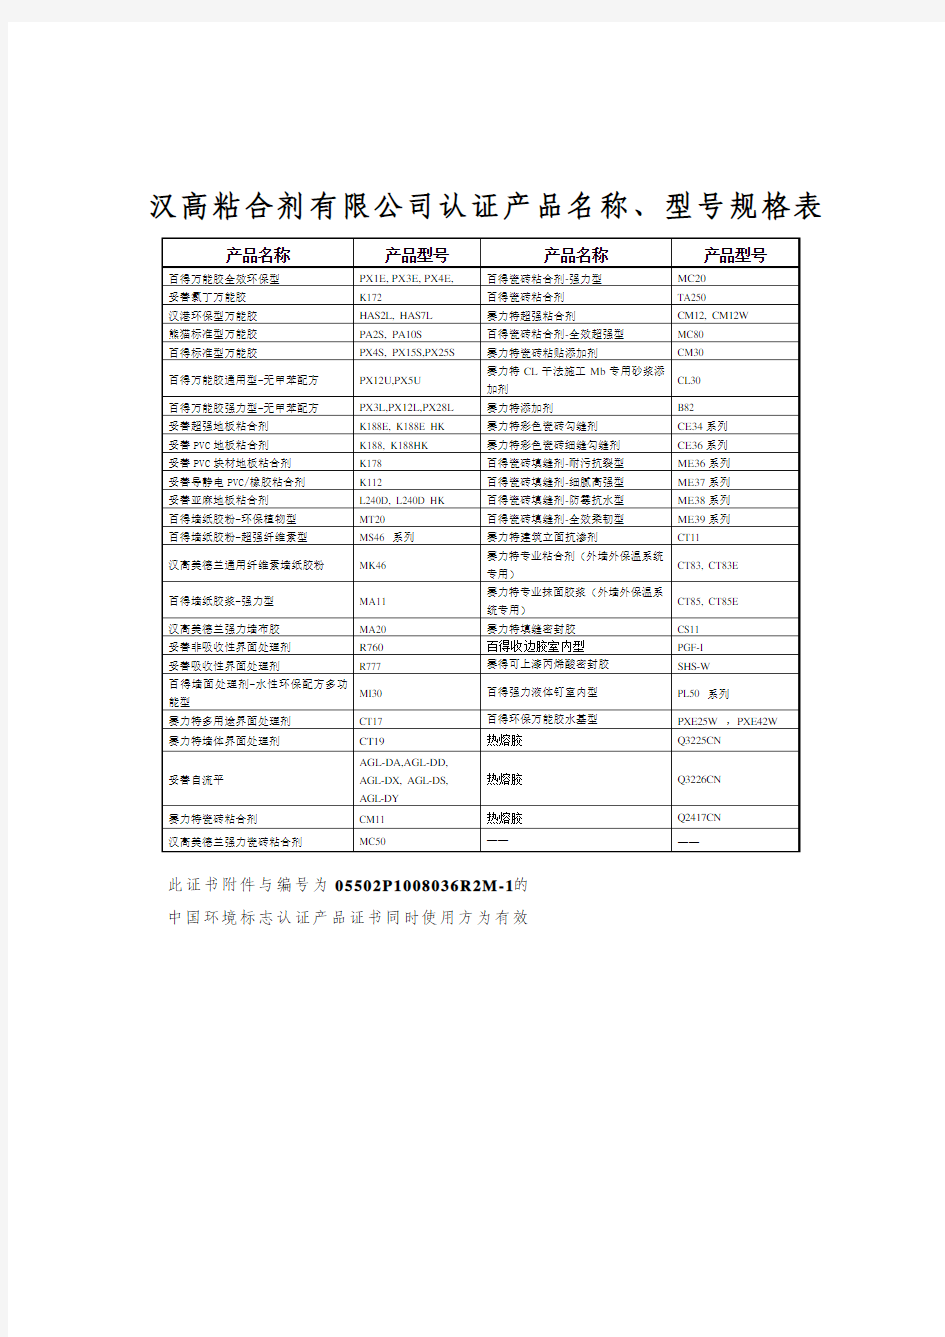 汉高粘合剂有限公司认证产品名称、型号规格表